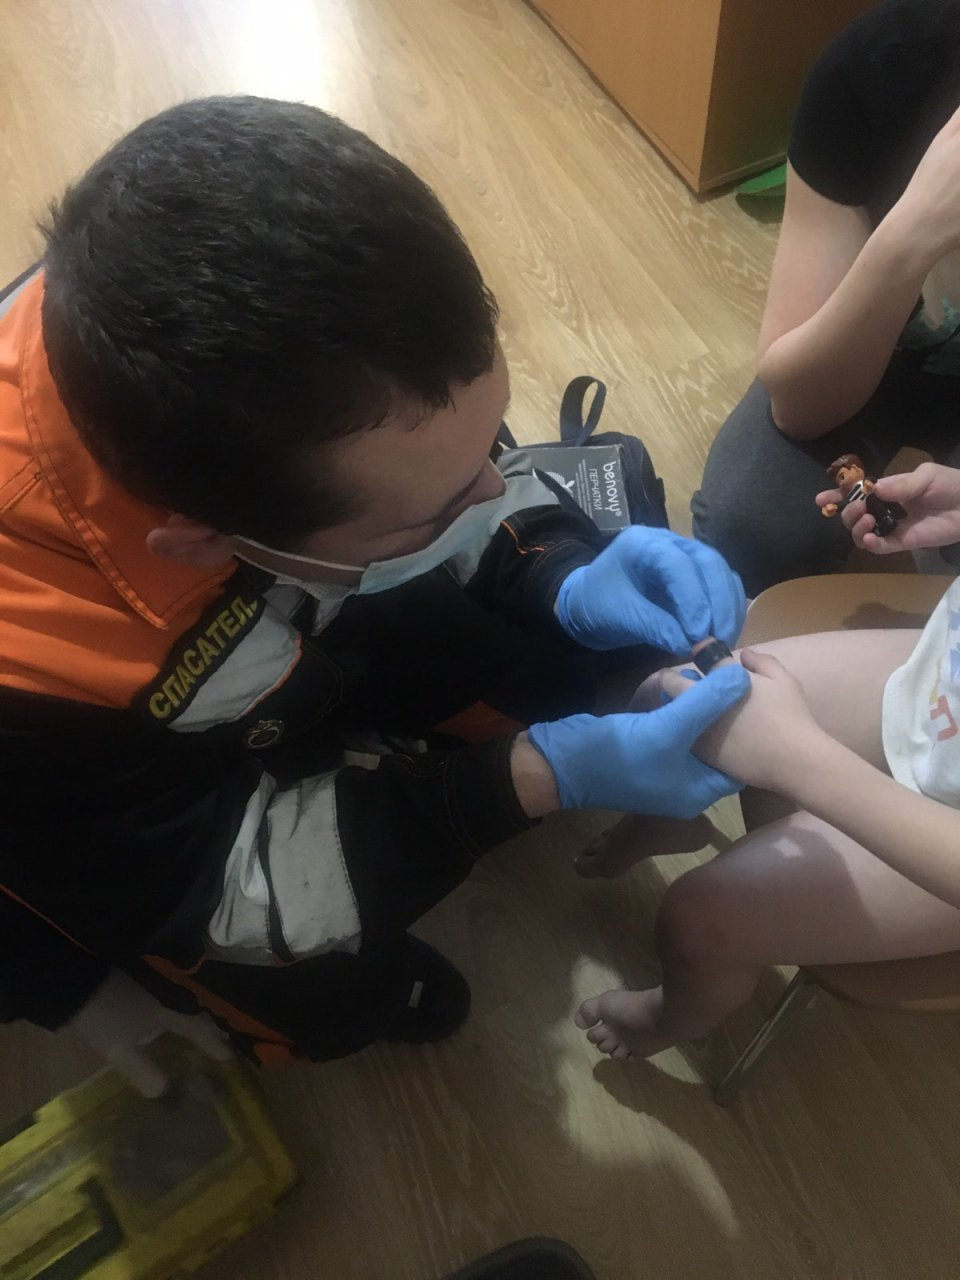 Случай на самоизоляции: спасатели помогли четырехлетнему малышу в Ярославле